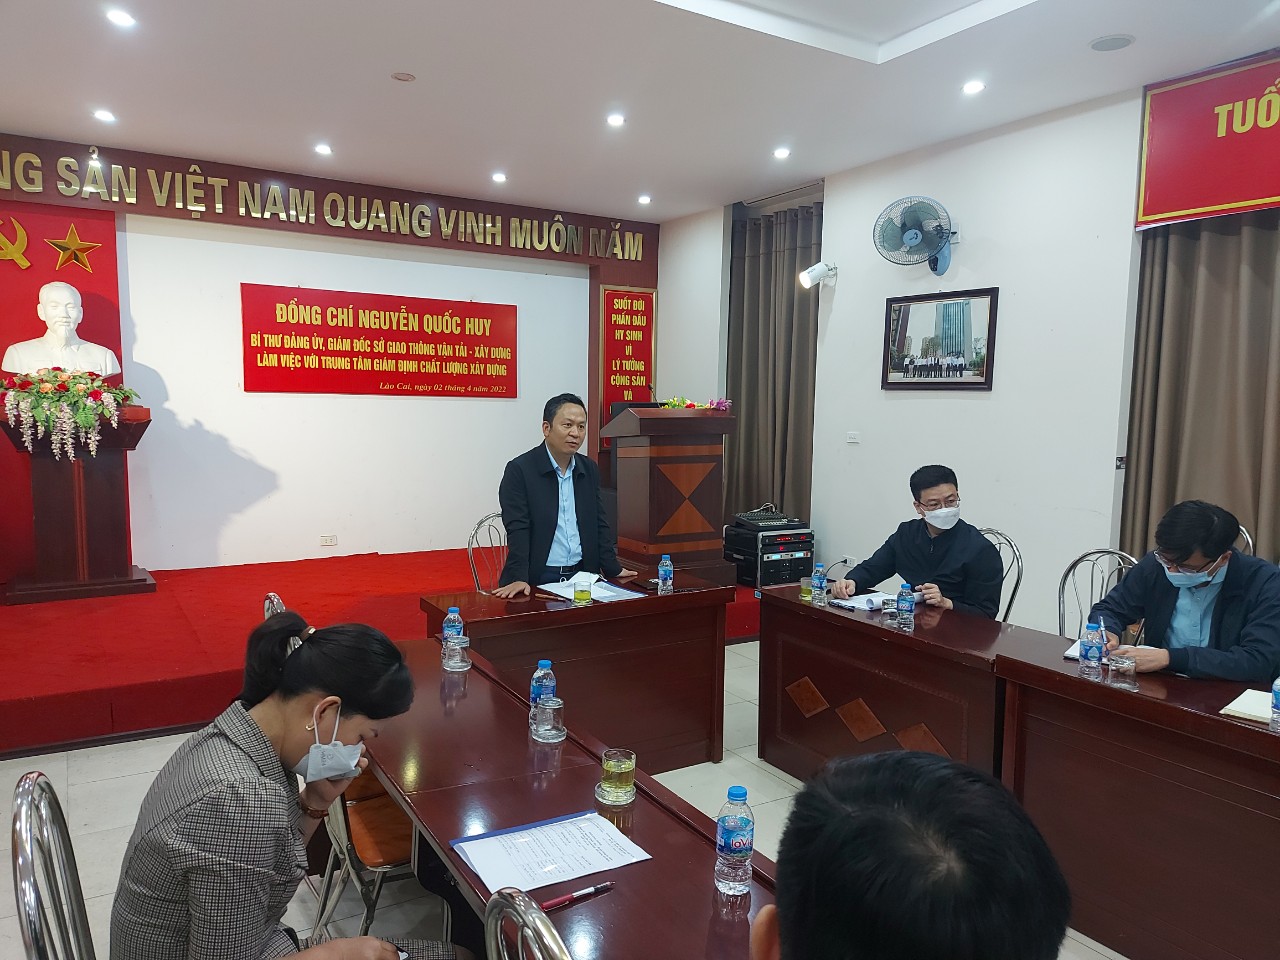 Chương trình làm việc của đồng chí Nguyễn Quốc Huy- Bí thư Đảng ủy, Giám đốc Sở GTVT-XD với Trung tâm Giám định Chất lượng xây dựng tỉnh Lào Cai